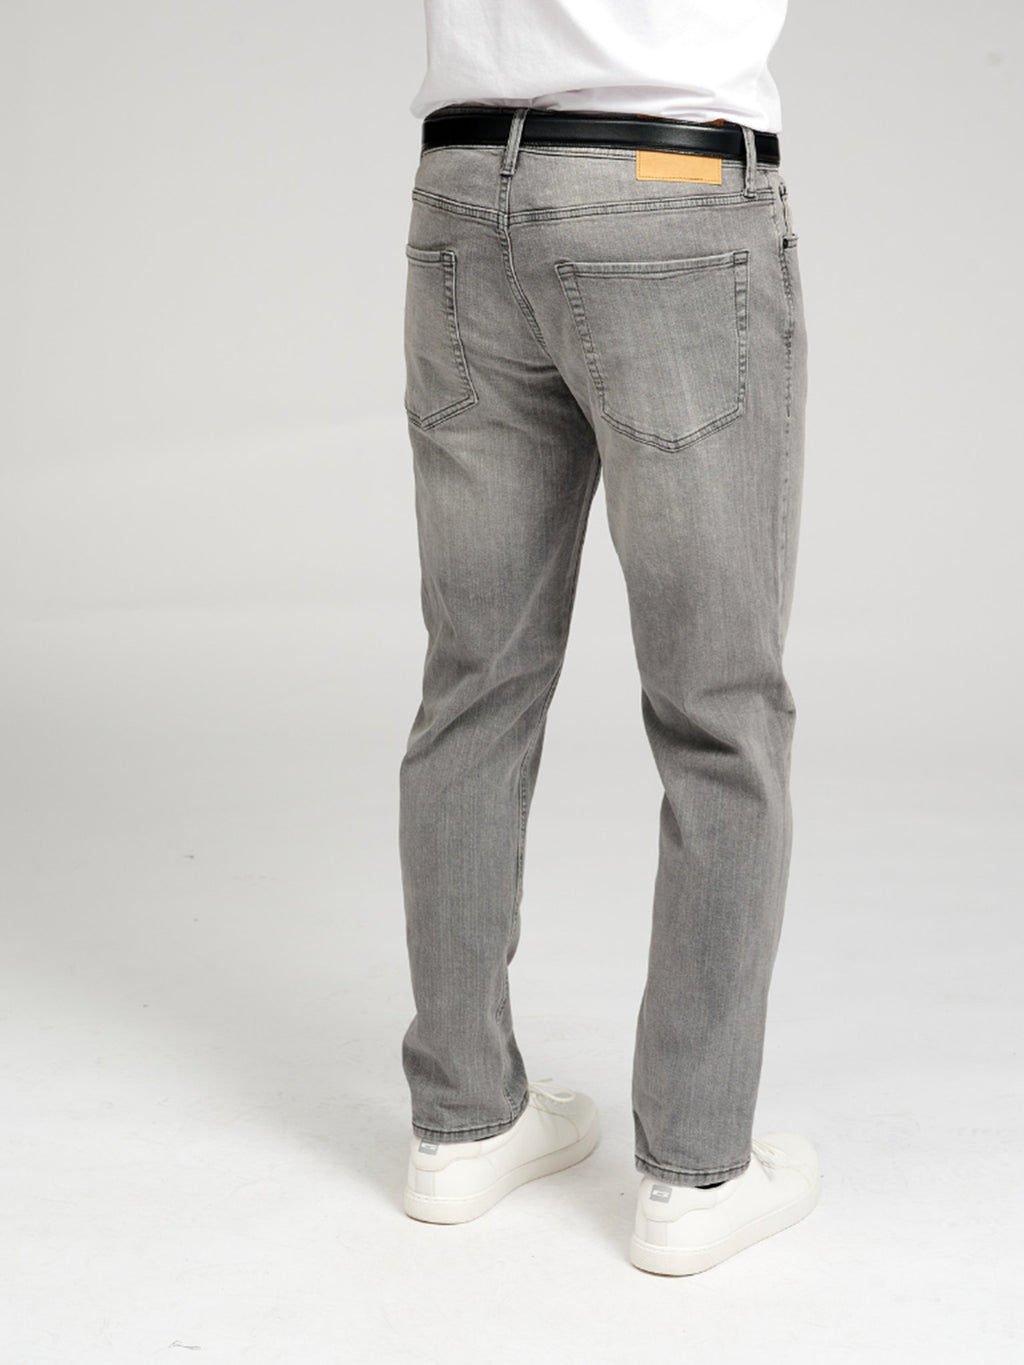 Les jeans de performance originaux (réguliers) - Denim gris